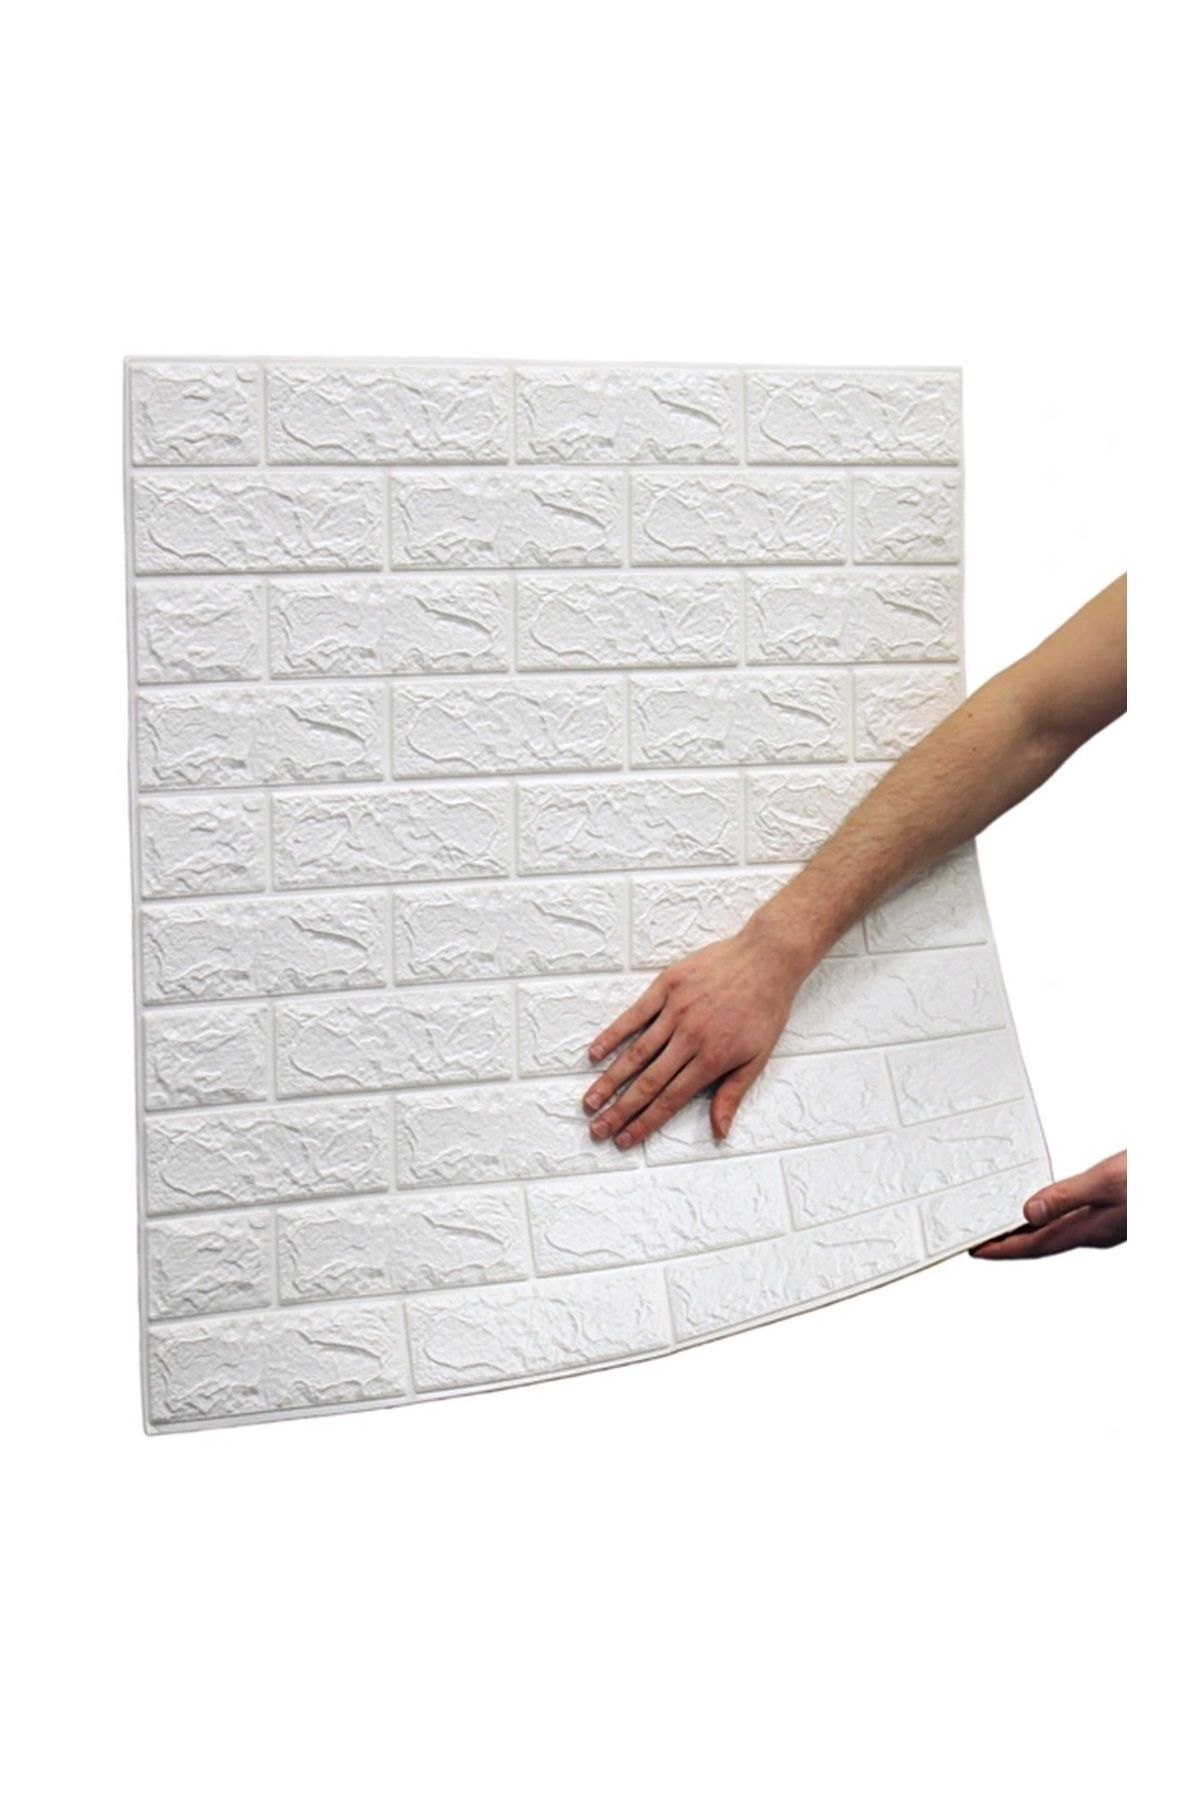 Bien Home 70 X 77 Duvar Paneli Beyaz 3d Dekoratif Kendinden Yapışkanlı Esnek Duvar Kağıdı Kaplama Paneli Köpük